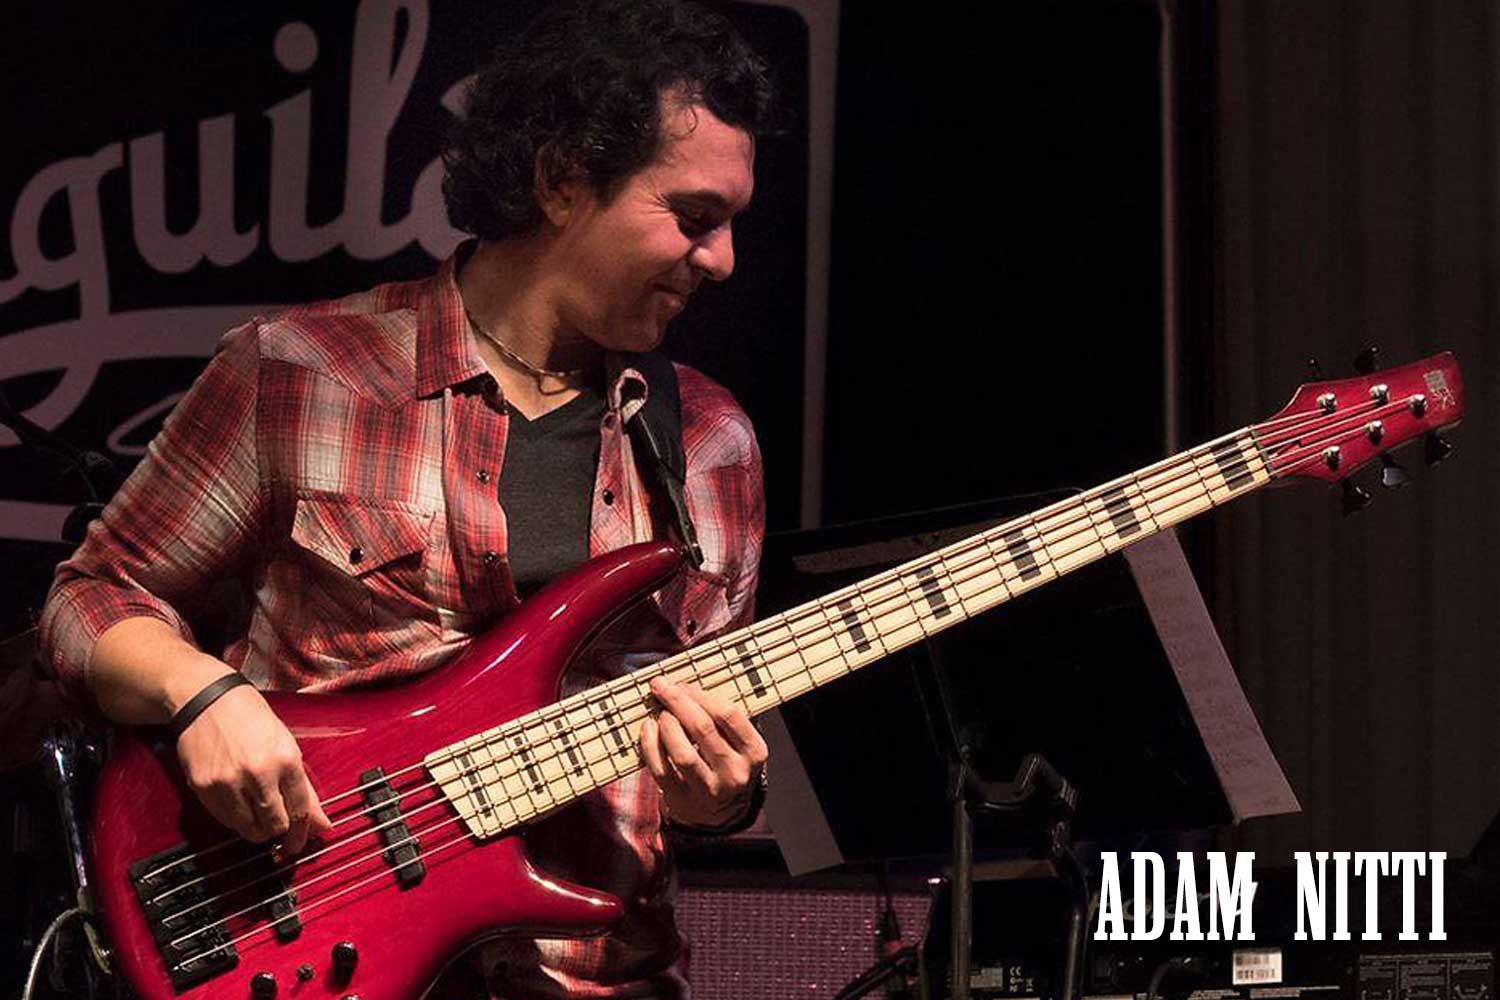 Adam Nitti on bass guitar